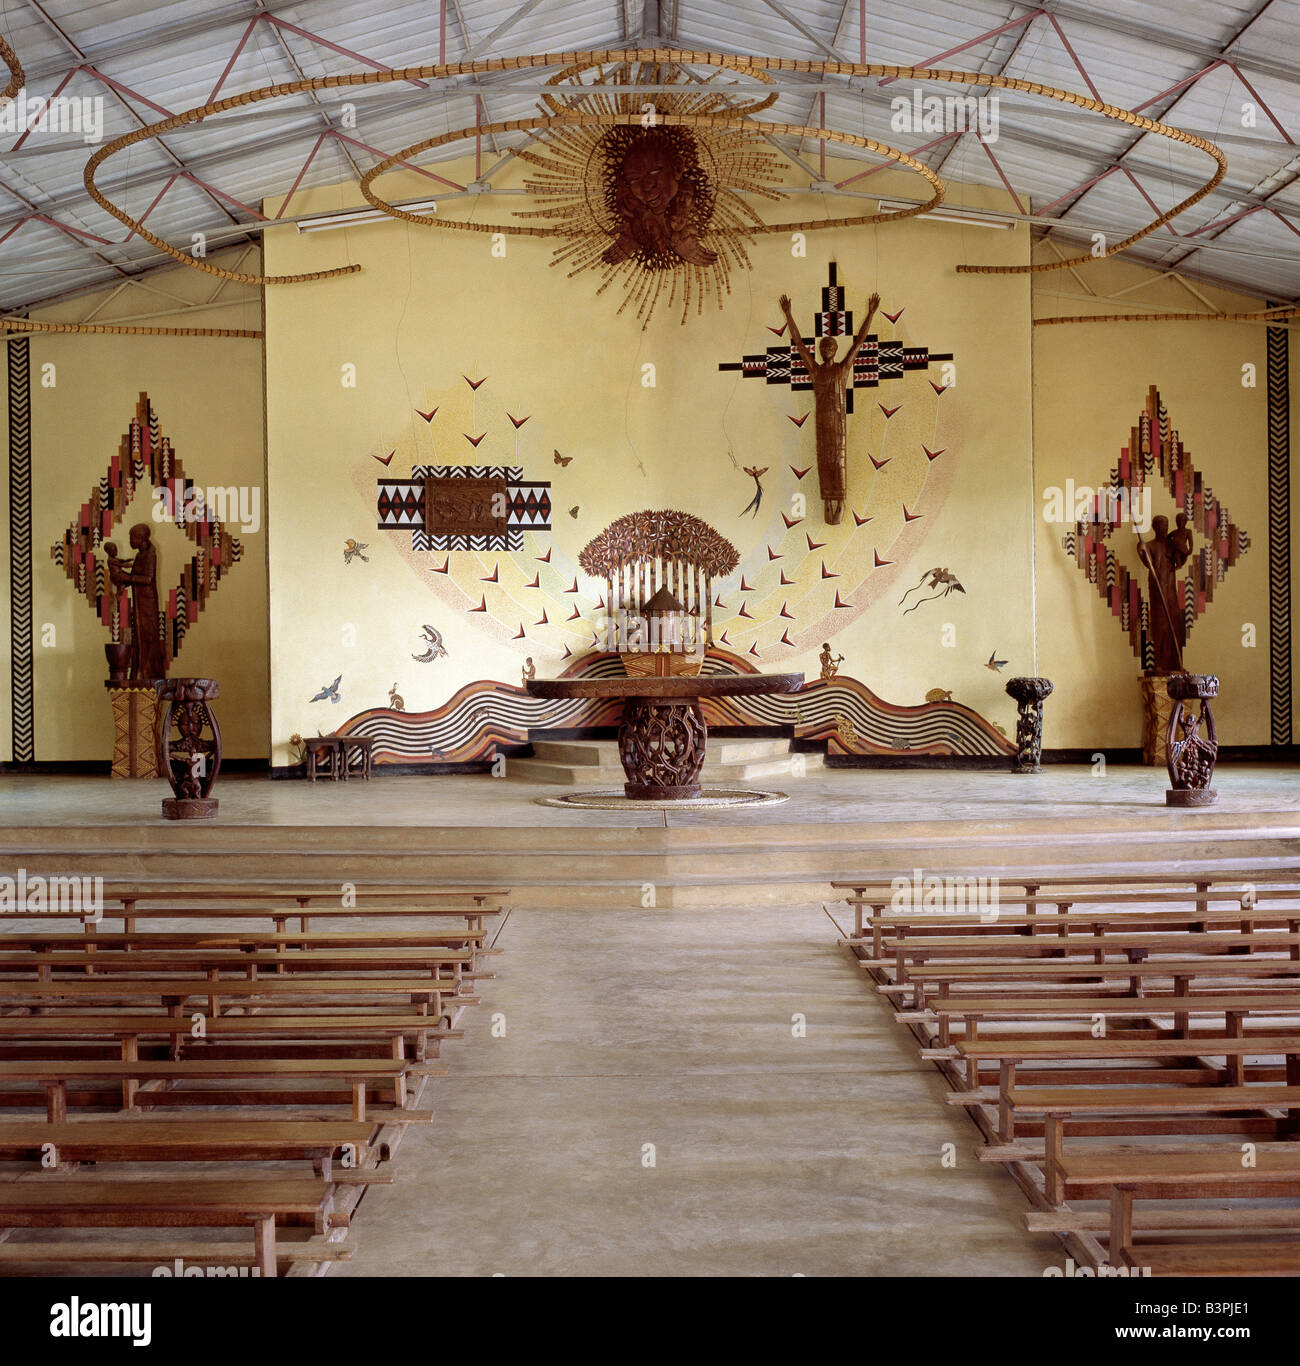 Il Malawi, Mua, Malawi centrale. La chiesa della missione cattolica a Mua combina la religione occidentale con arte locale in maniera visivamente stimolante. Foto Stock